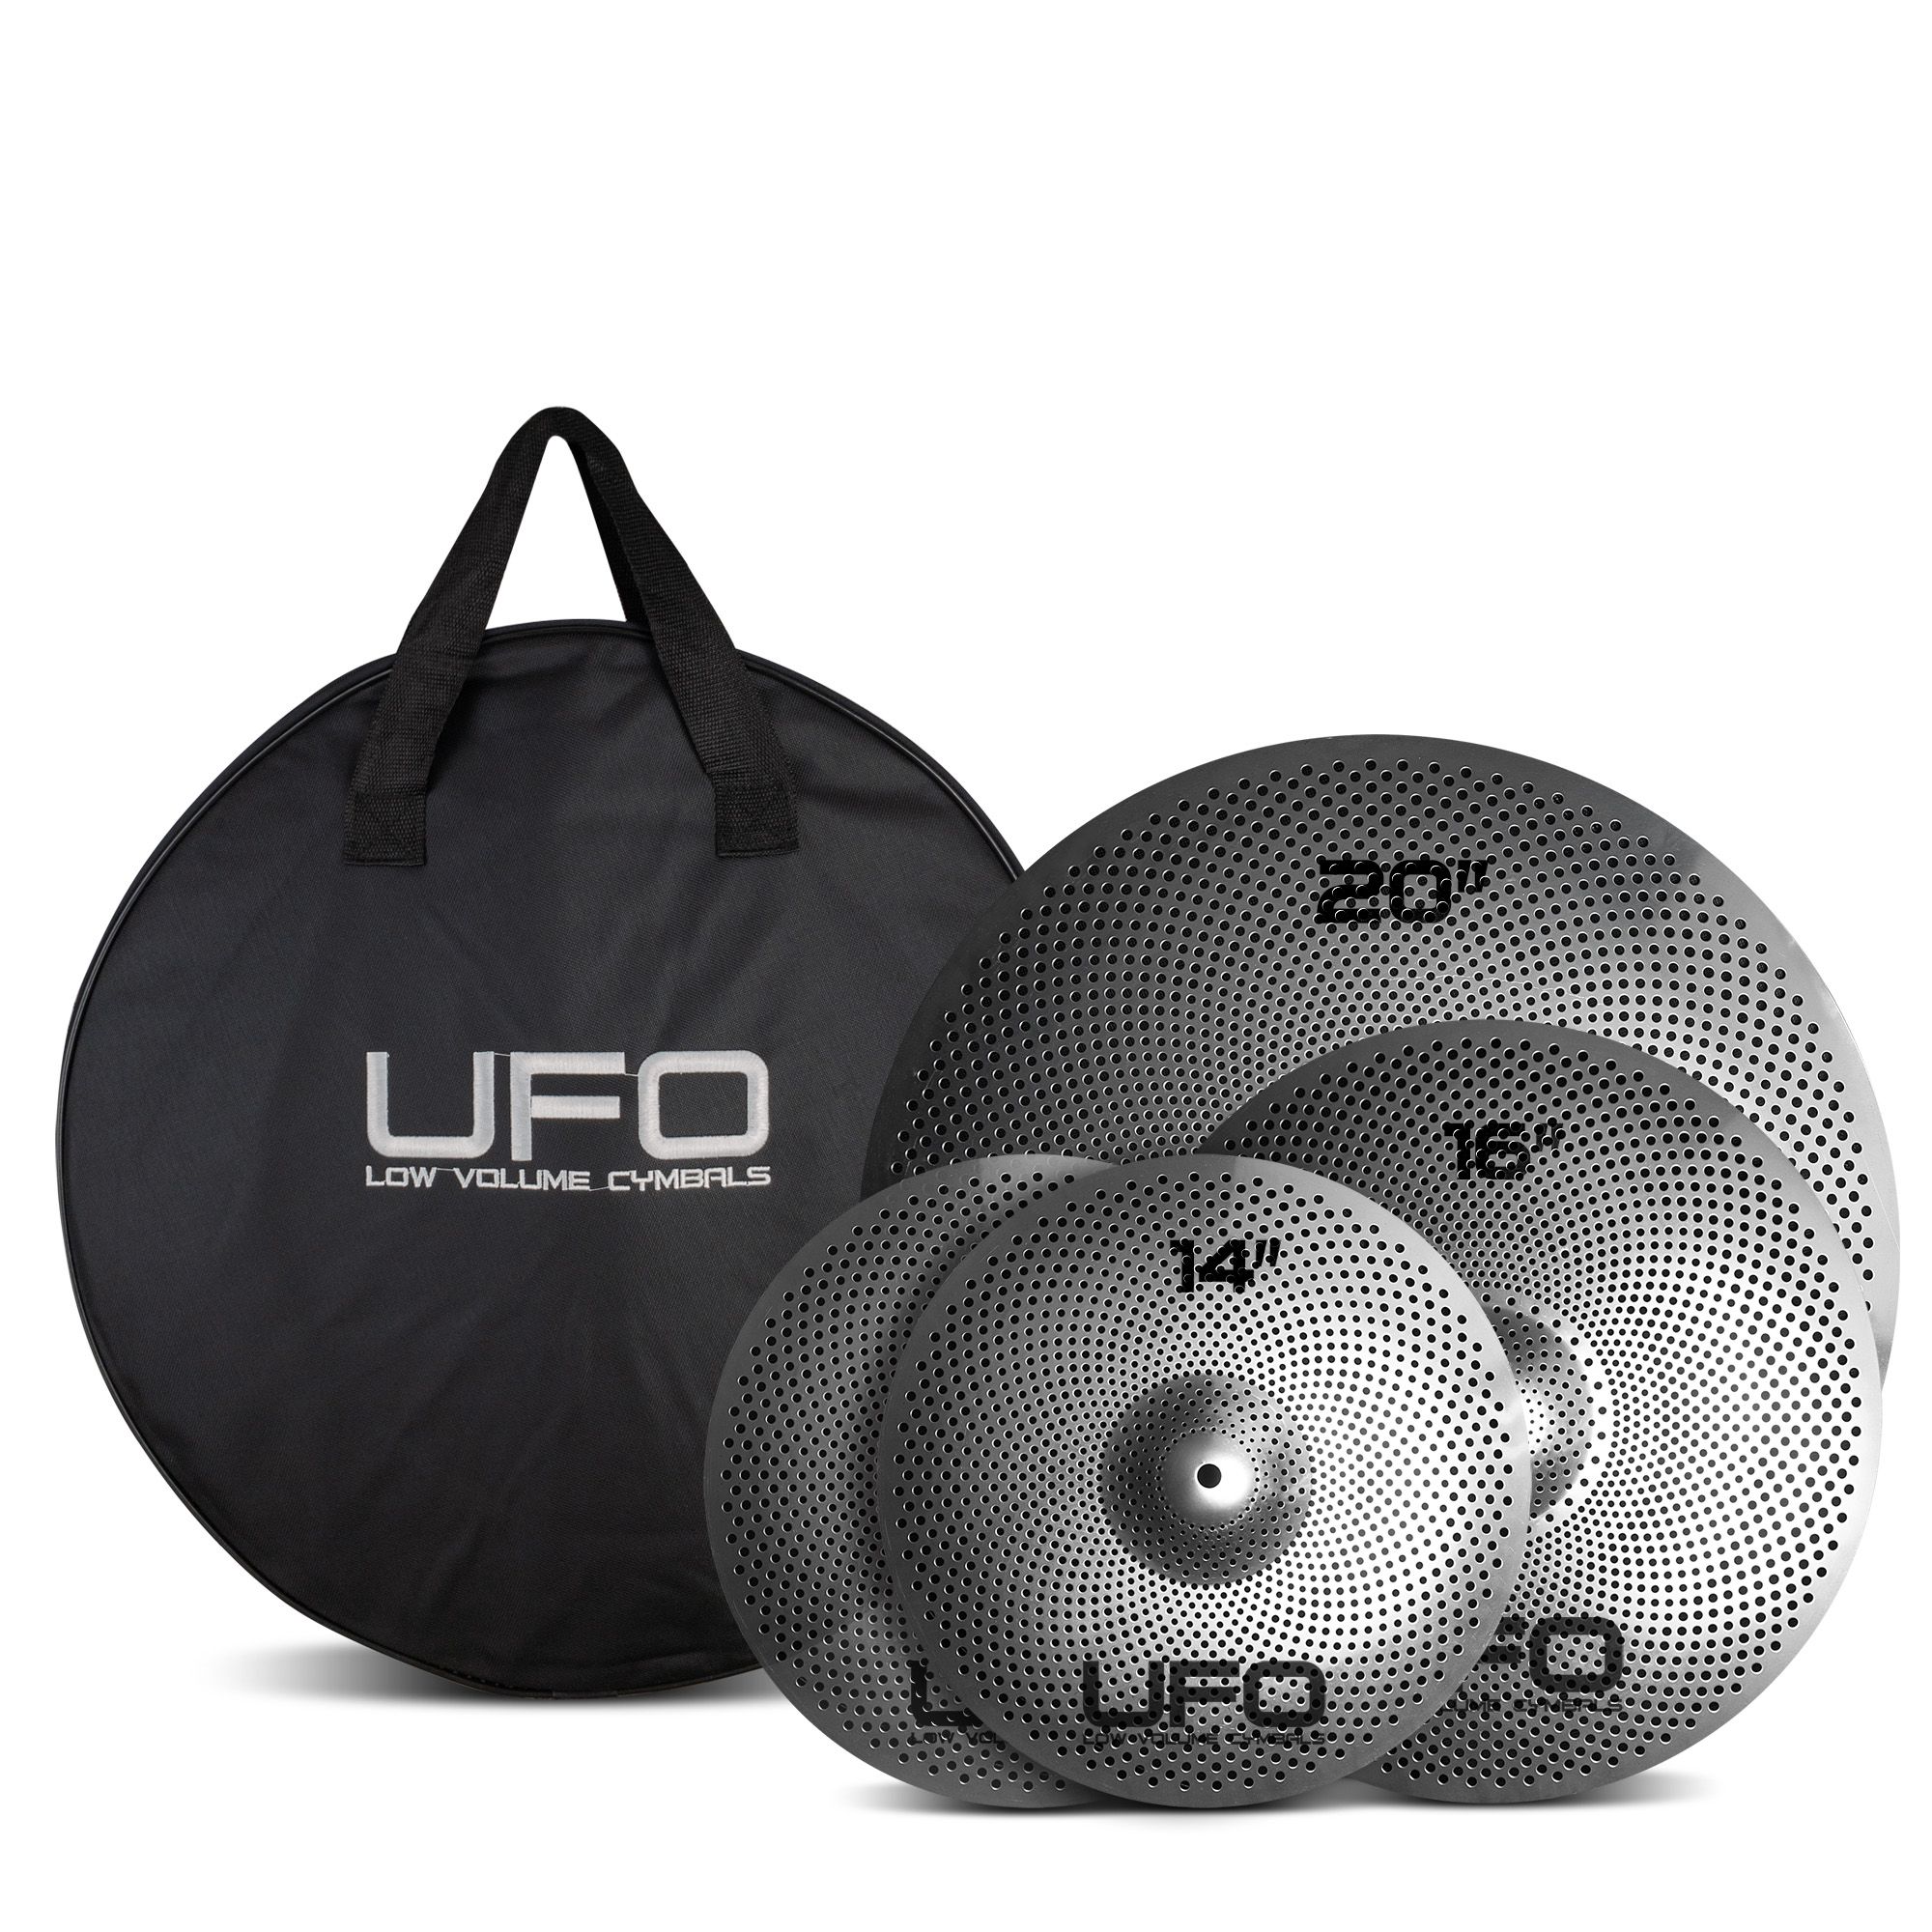 UFO Cymbal Set | Obrázok 1 | eplay.sk